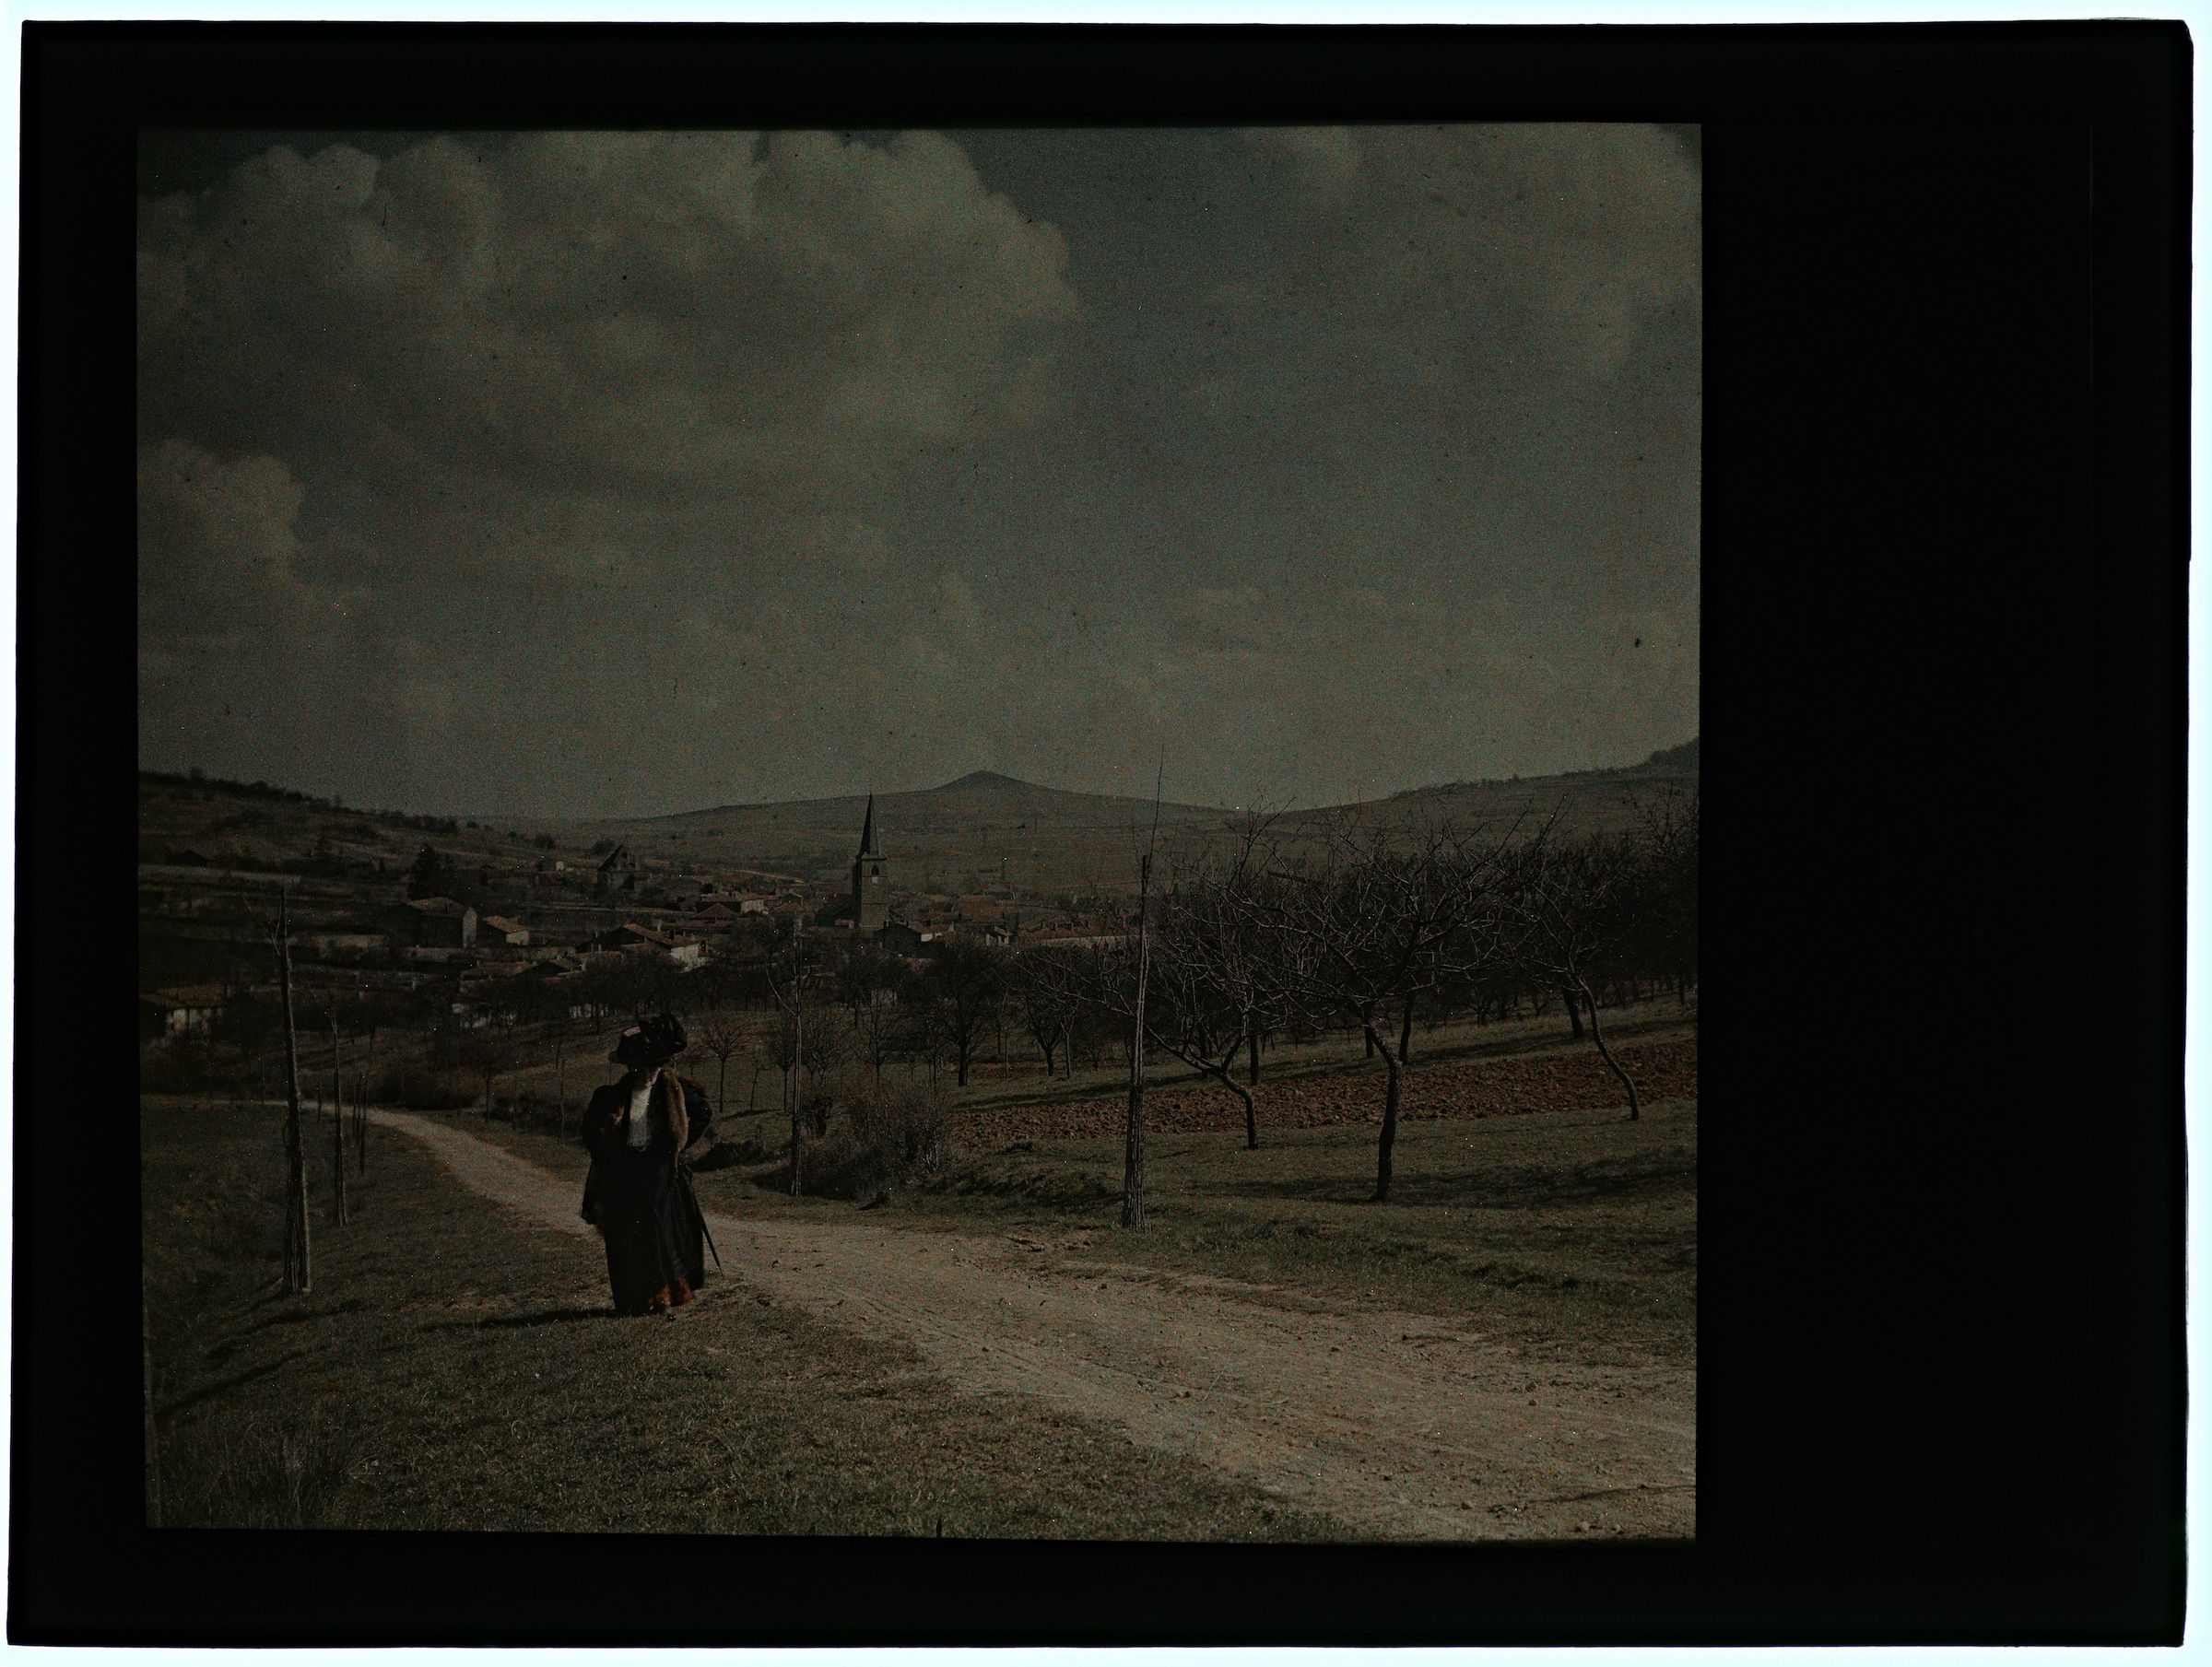 Femme dans la campagne avec village en arrière plan